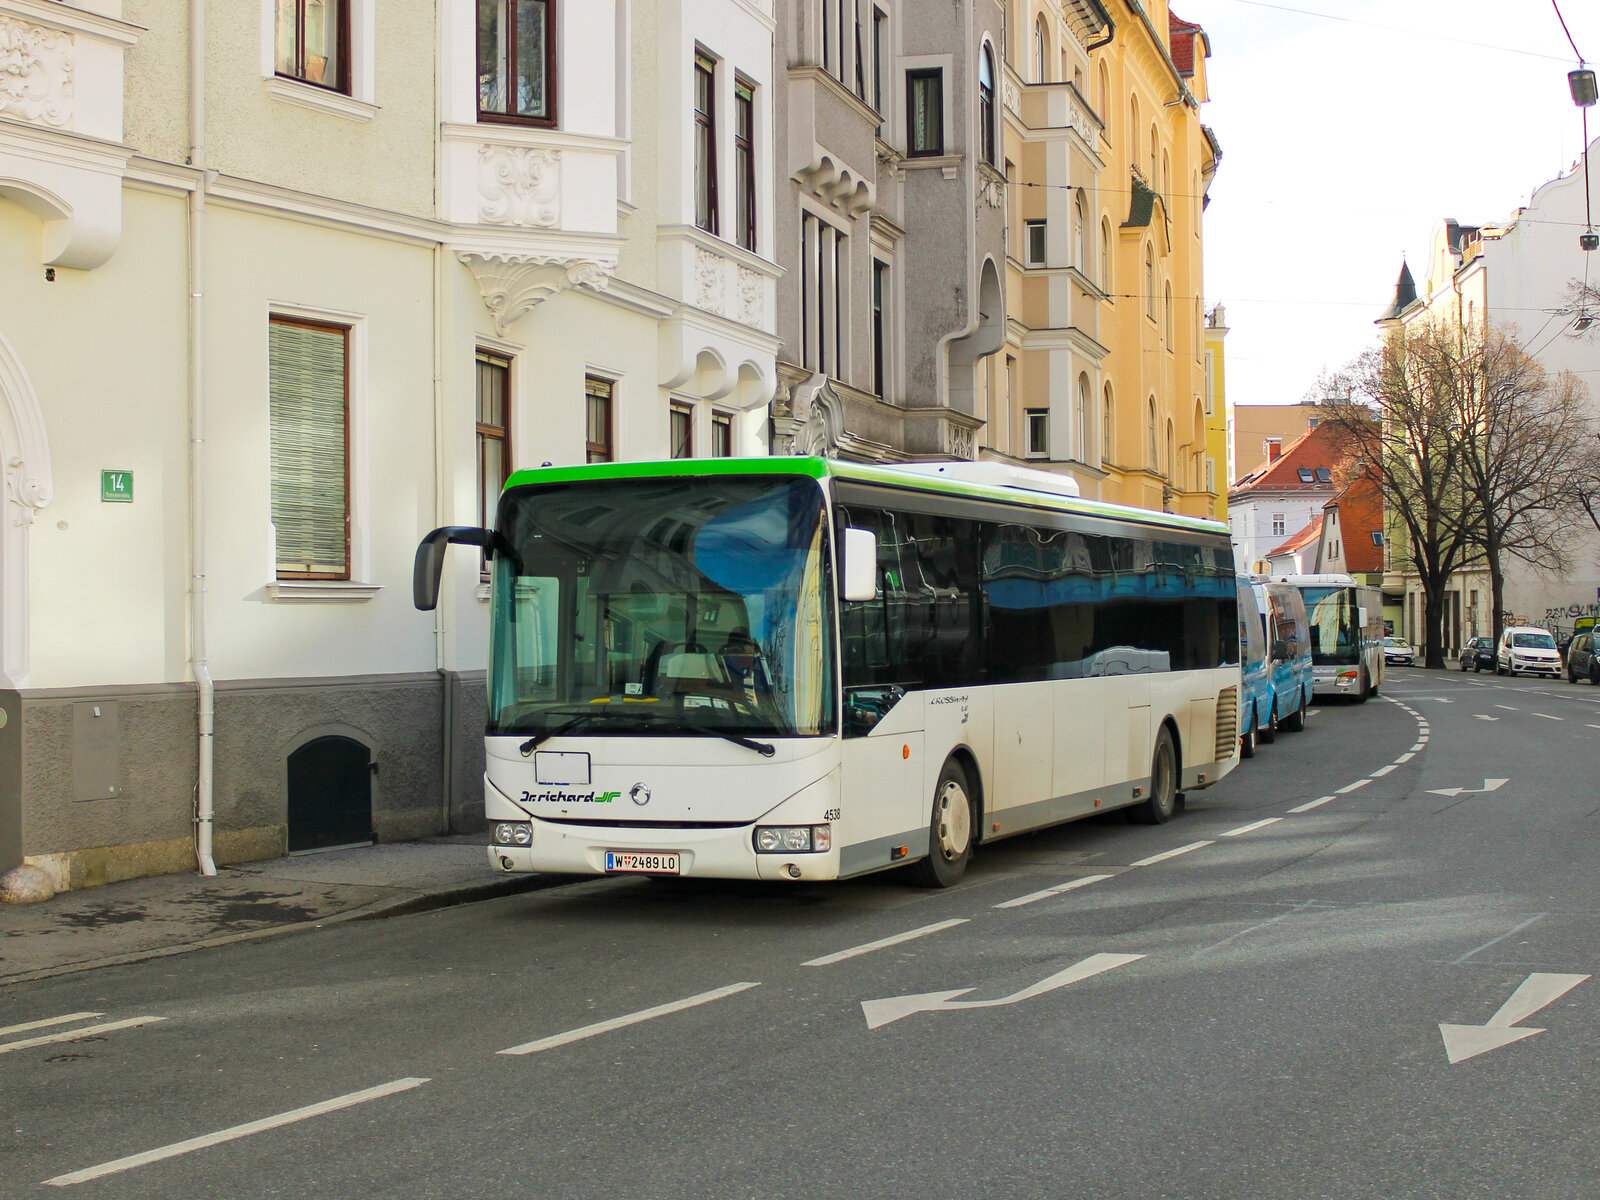 Graz. Wagen 4538 von Dr. Richard, ein Irisbus Crossway LE, konnte von mir am 10.01.2023 abgestellt am Dietrichsteinplatz fotografiert werden.